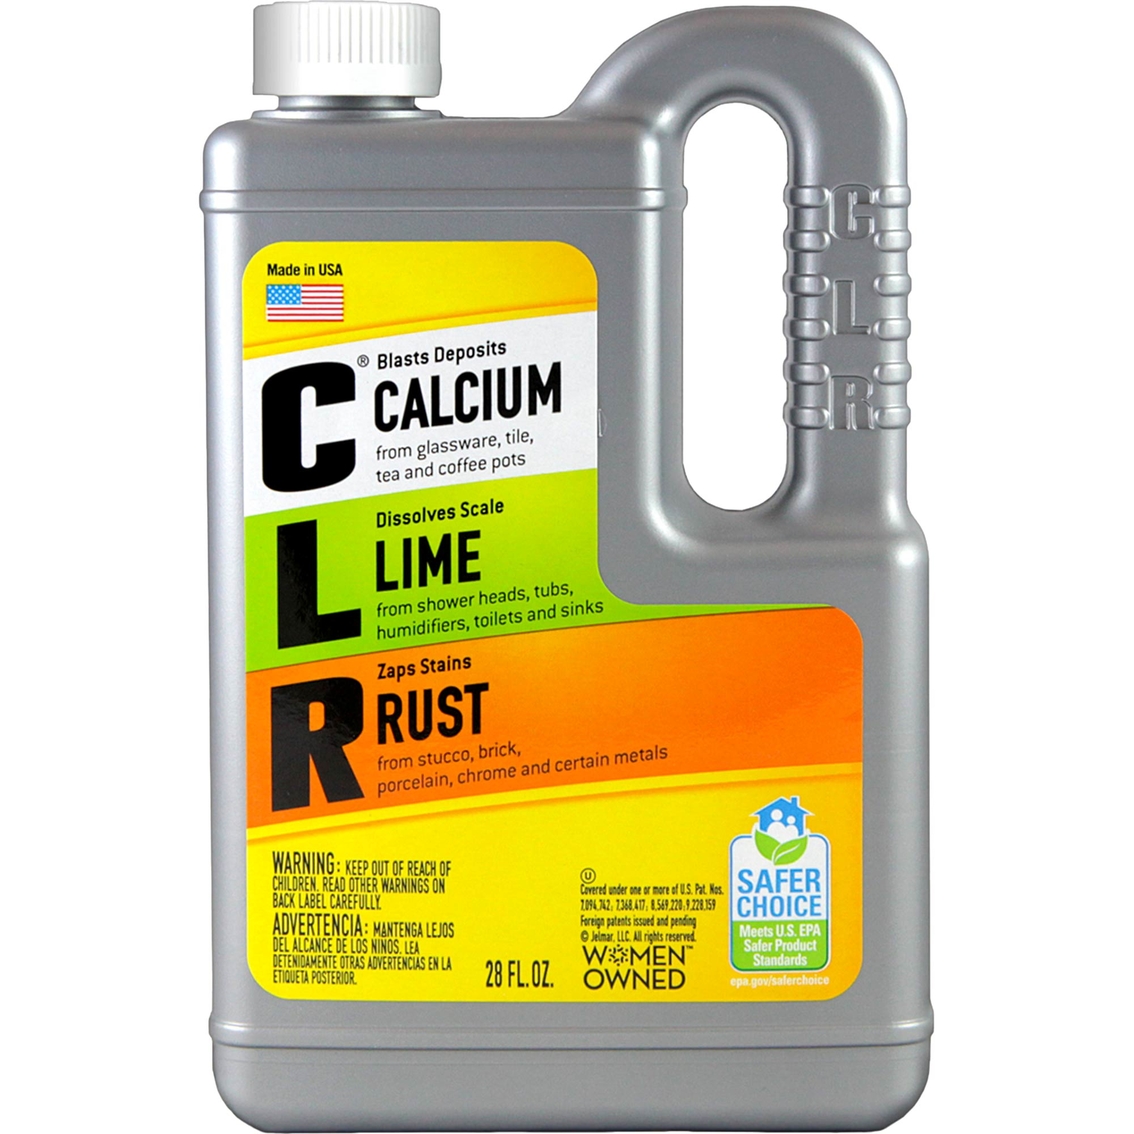 Jelmar Clr Tarnex CL-12 calcium Rust & Lime Remover